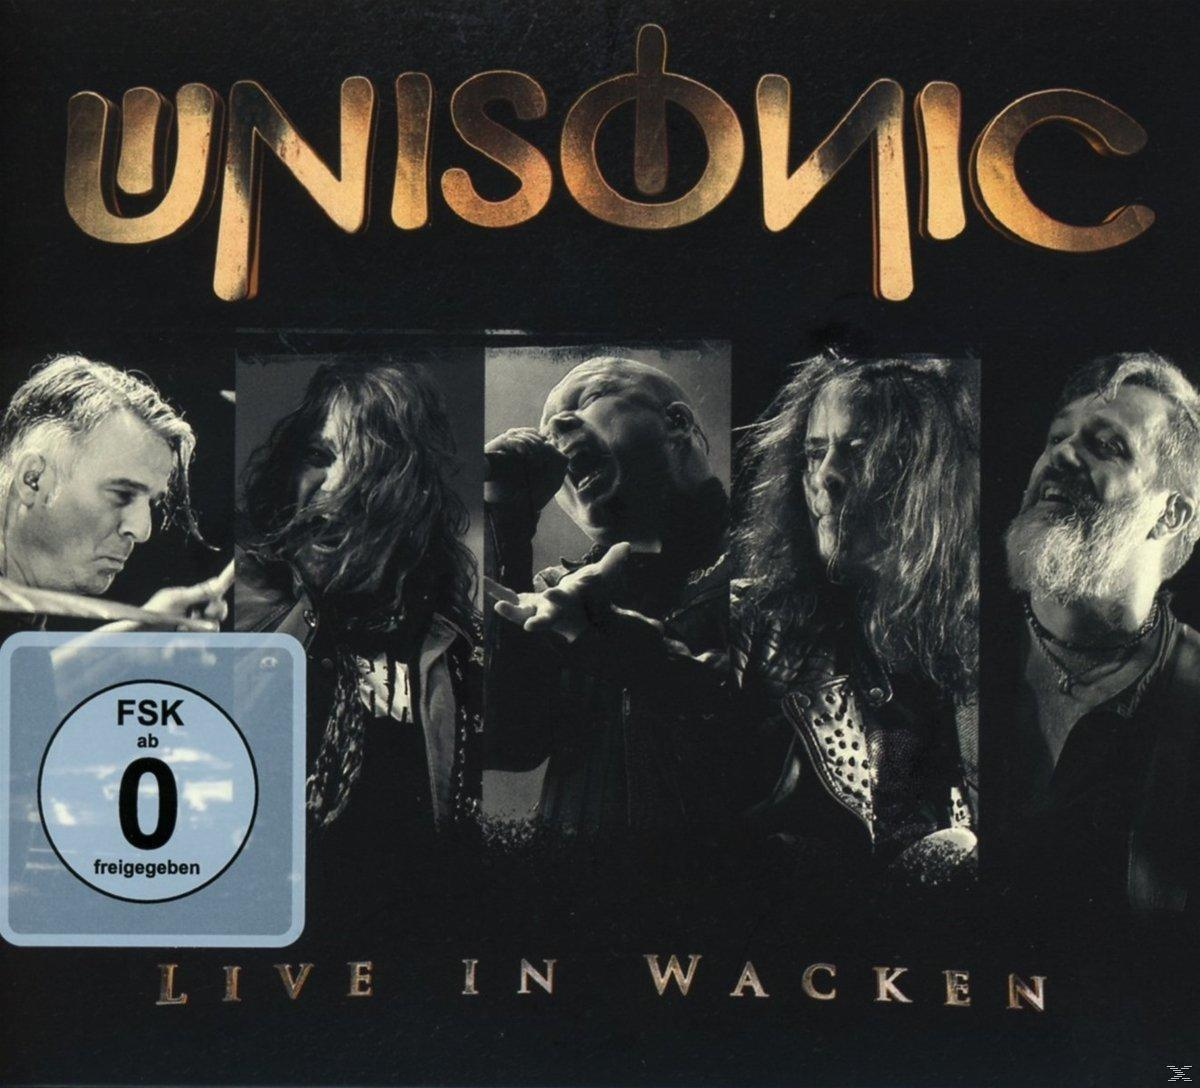 Unisonic - - in DVD + Video) Wacken (CD Live